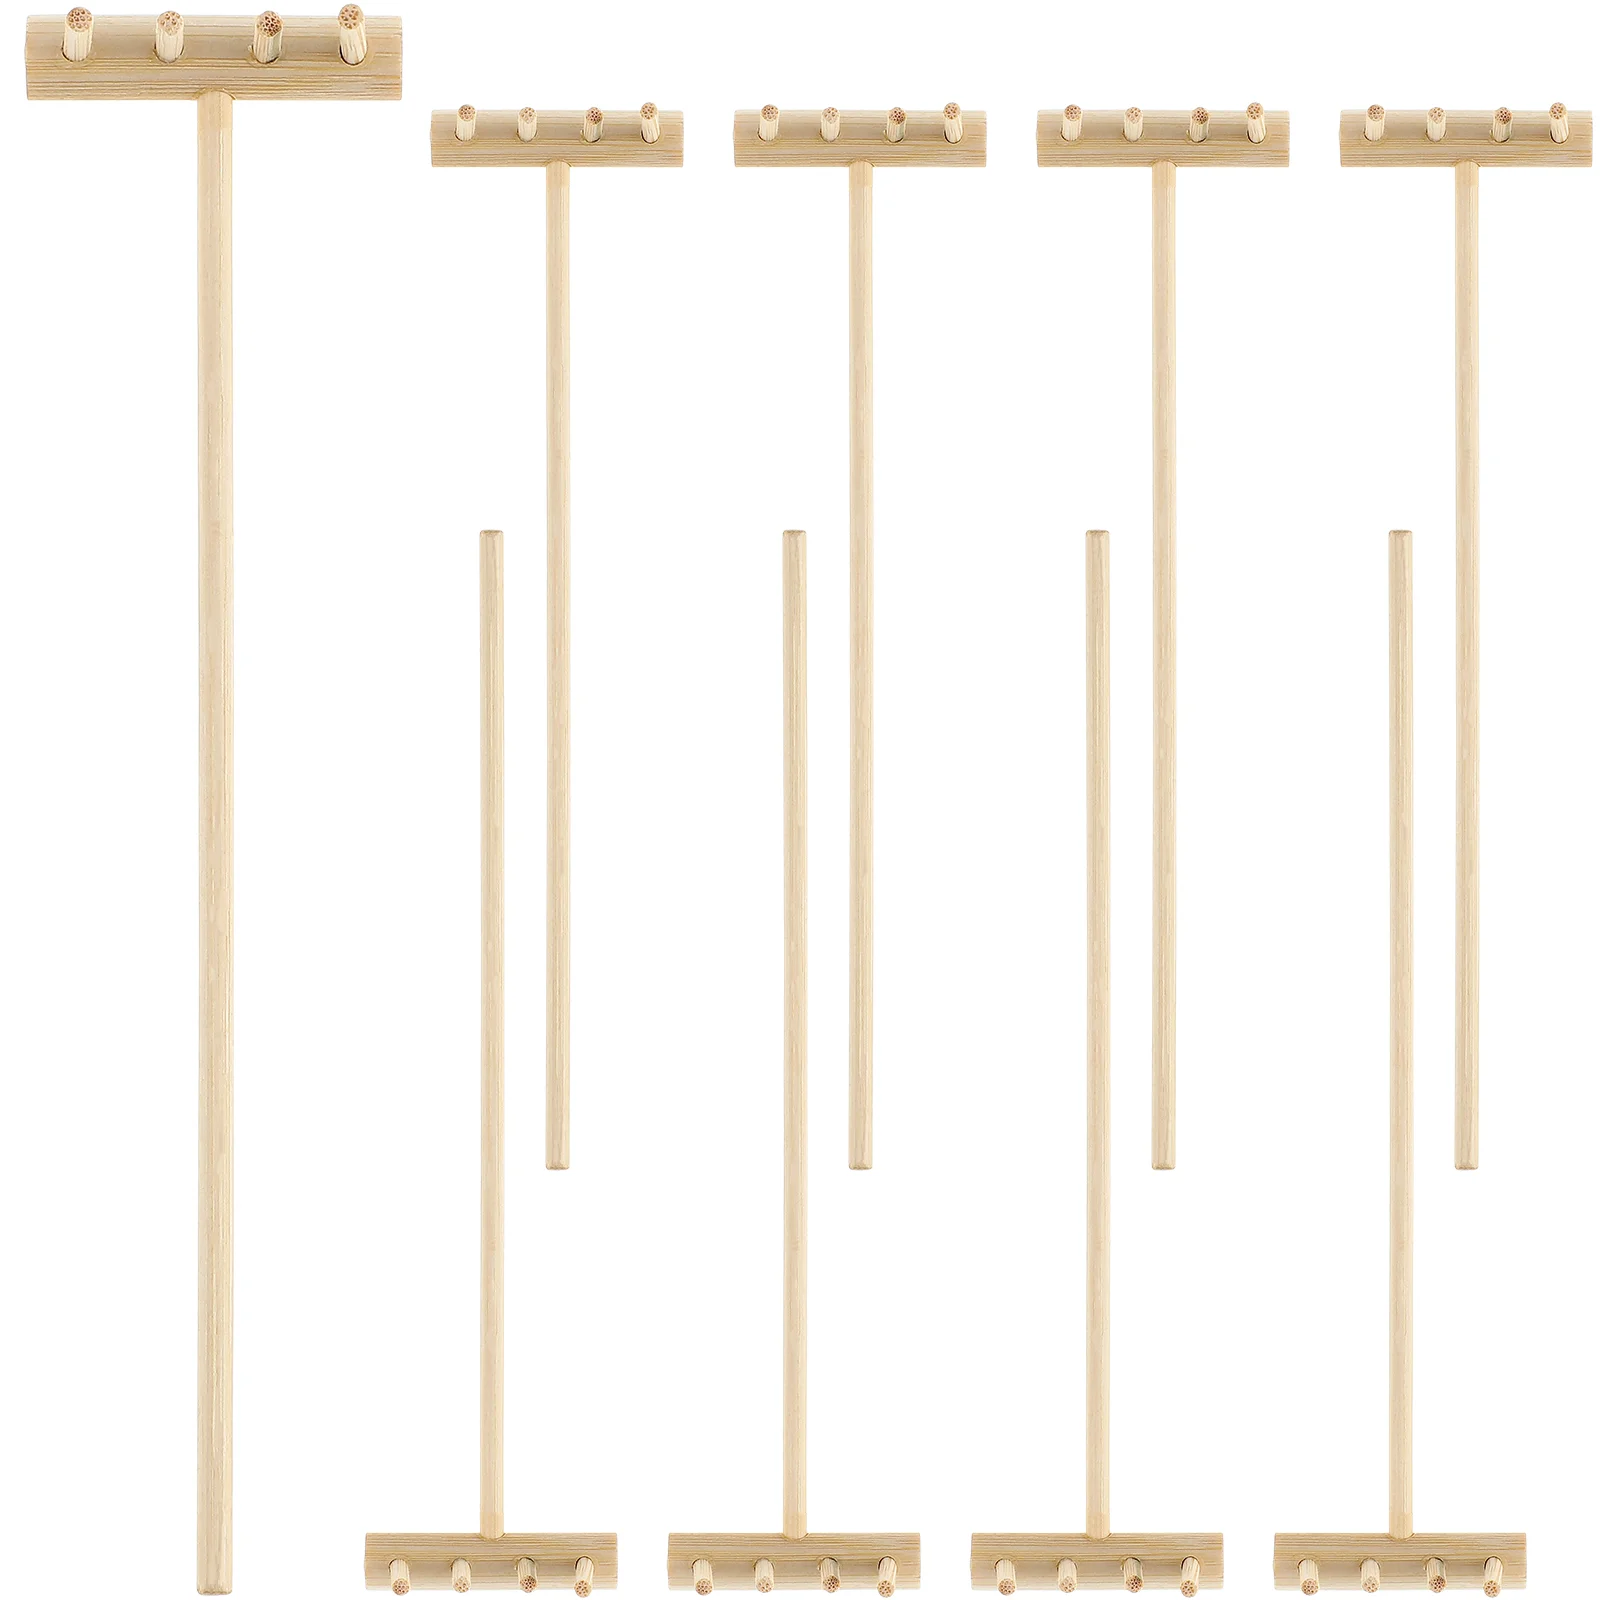 

8 шт. мини дзен песок грабли бамбуковые инструменты Песок стол ручной работы украшения набор инструментов настольные украшения